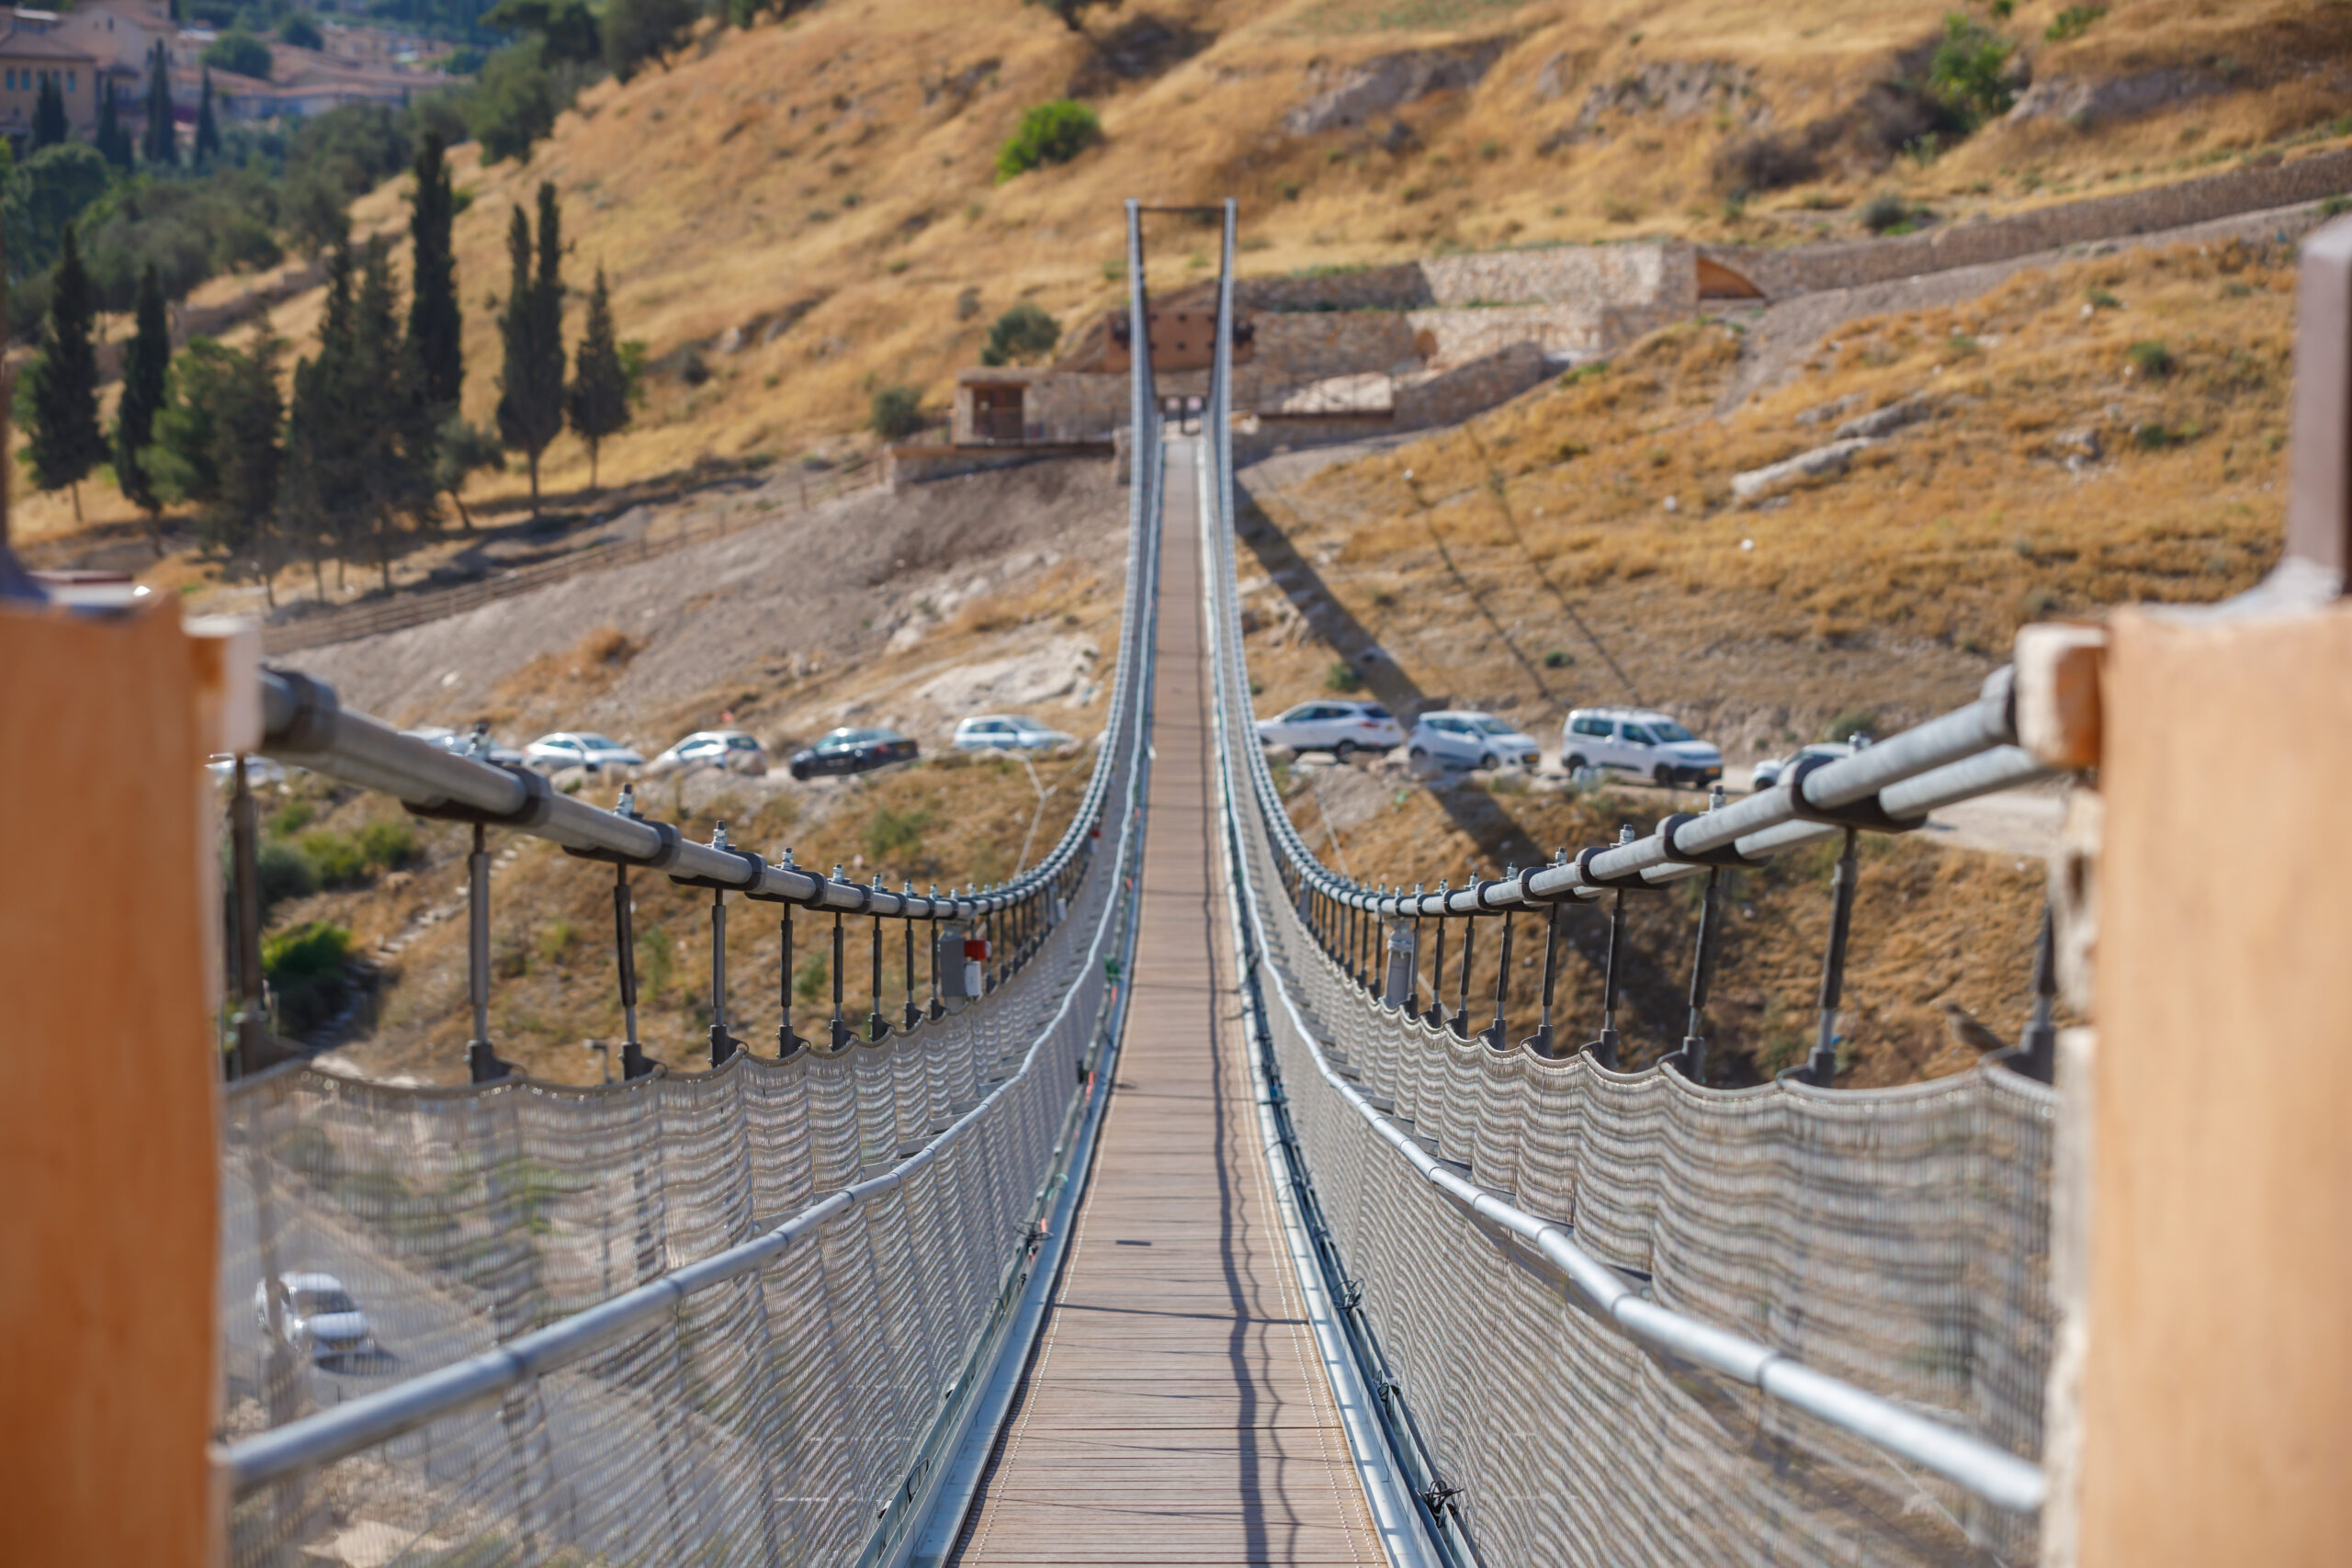 The suspension bridge in Jerusalem